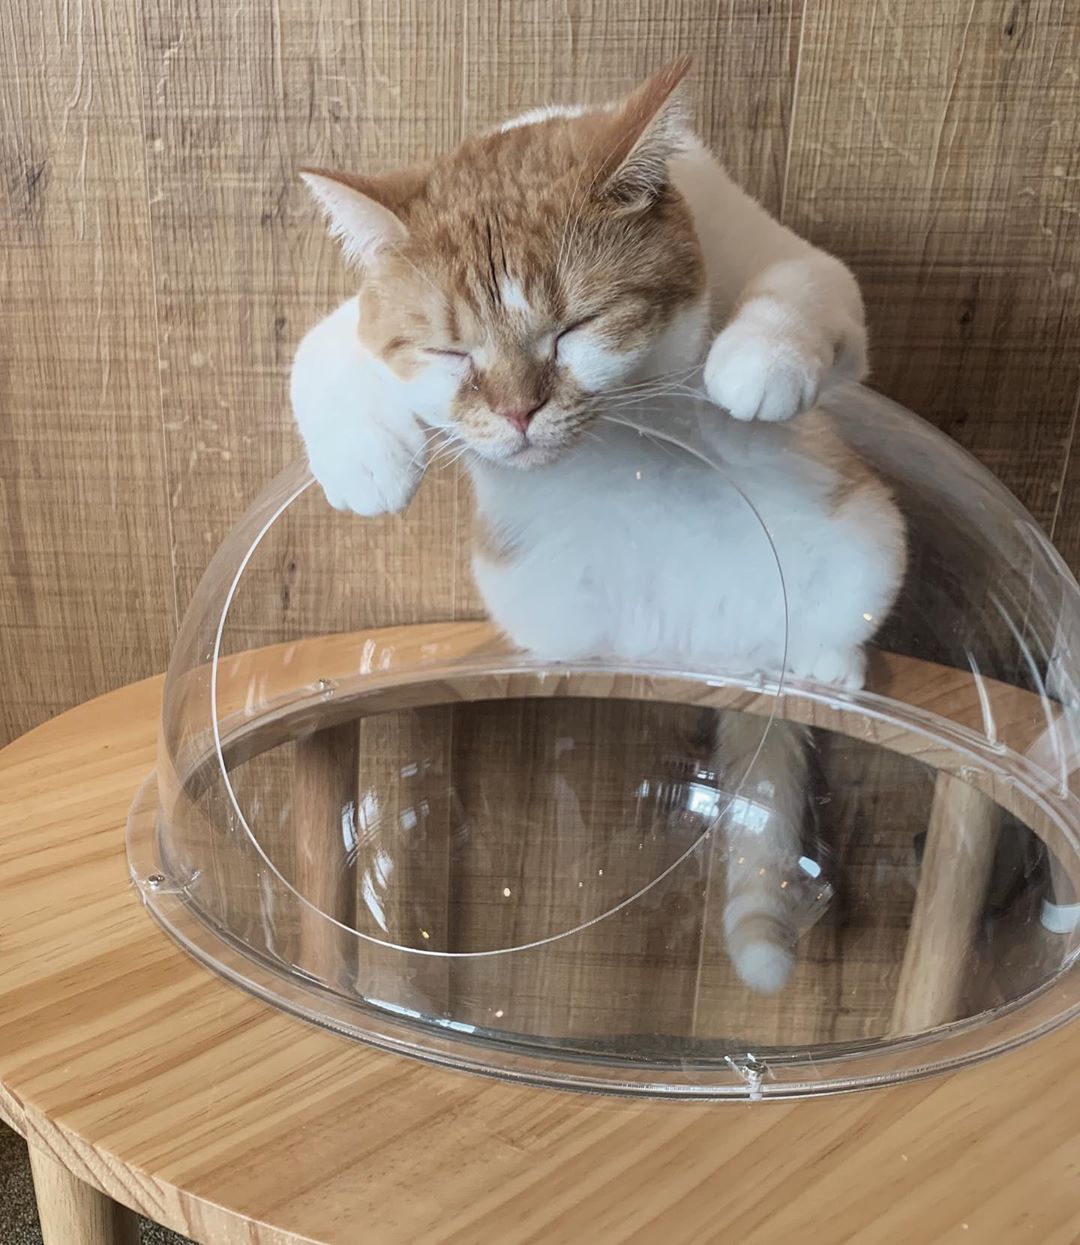 木村なつみ 久々に猫カフェに やっぱり人生において動物ちゃん達の癒しの力は重大ですな 居心地良すぎて猫カフェ大好きだ Catcafemocha 猫カフェモカ Moe Zine